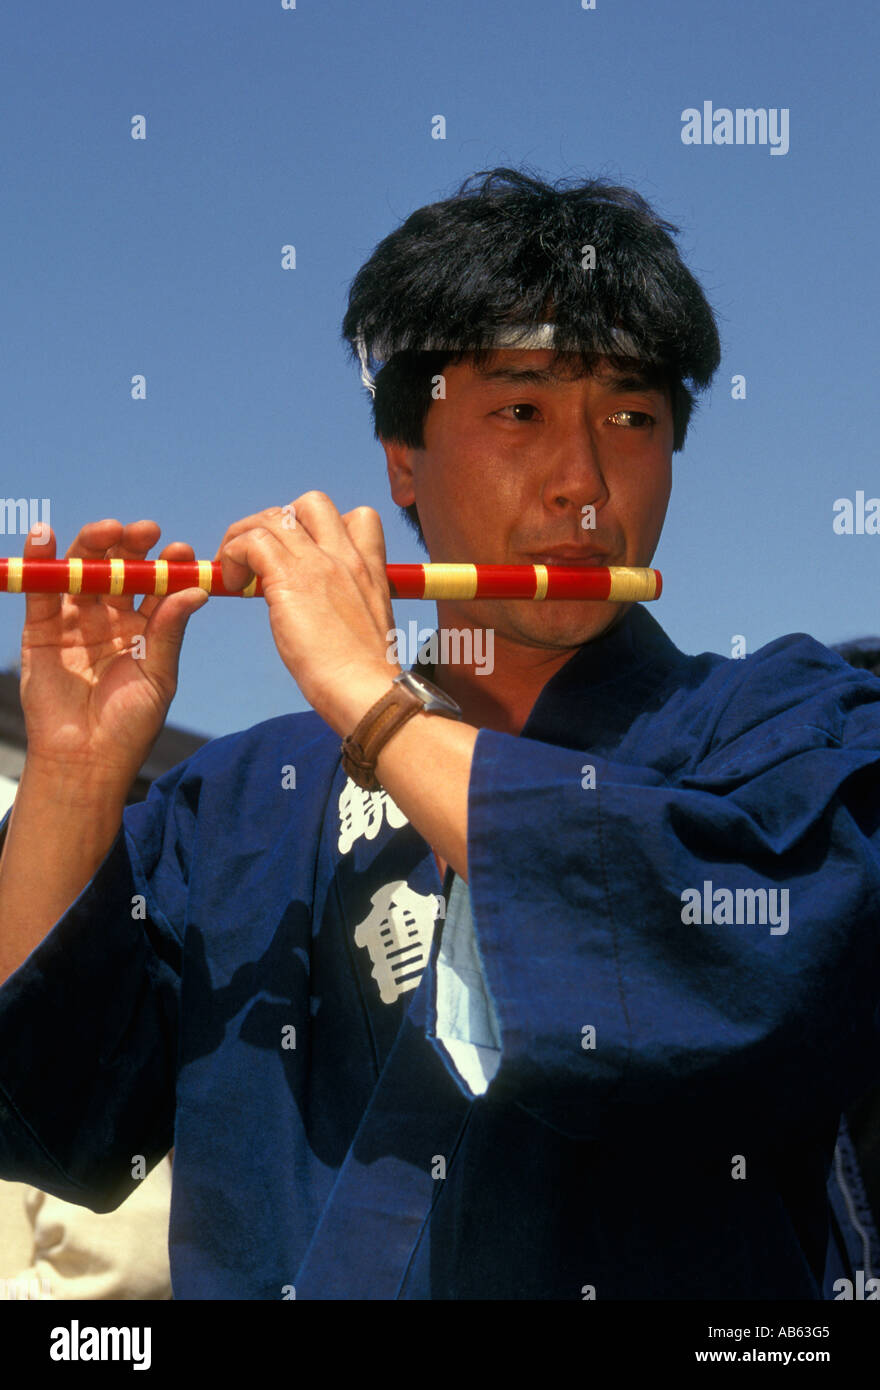 L'homme japonais, homme adulte, jouant de la flûte, joueur de flûte, flûtiste, flûtiste, cherry blossom festival, japantown, San Francisco, California, UNITED STATES Banque D'Images